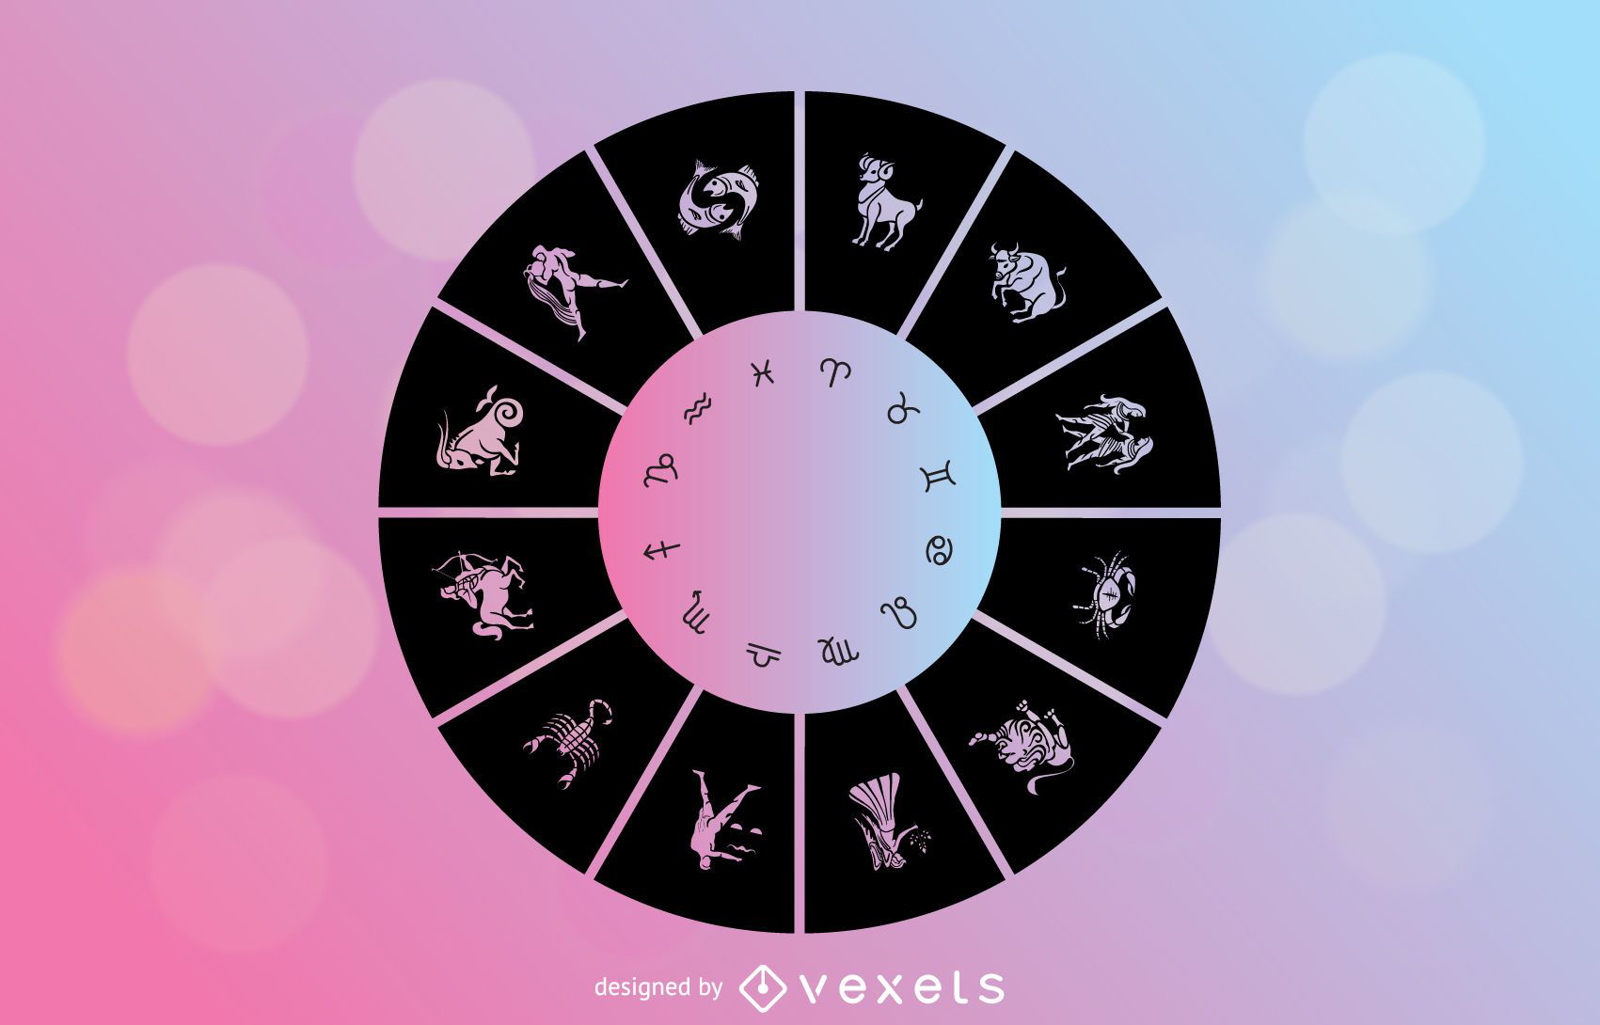 Download Horoscope Signs Vector - Vector download